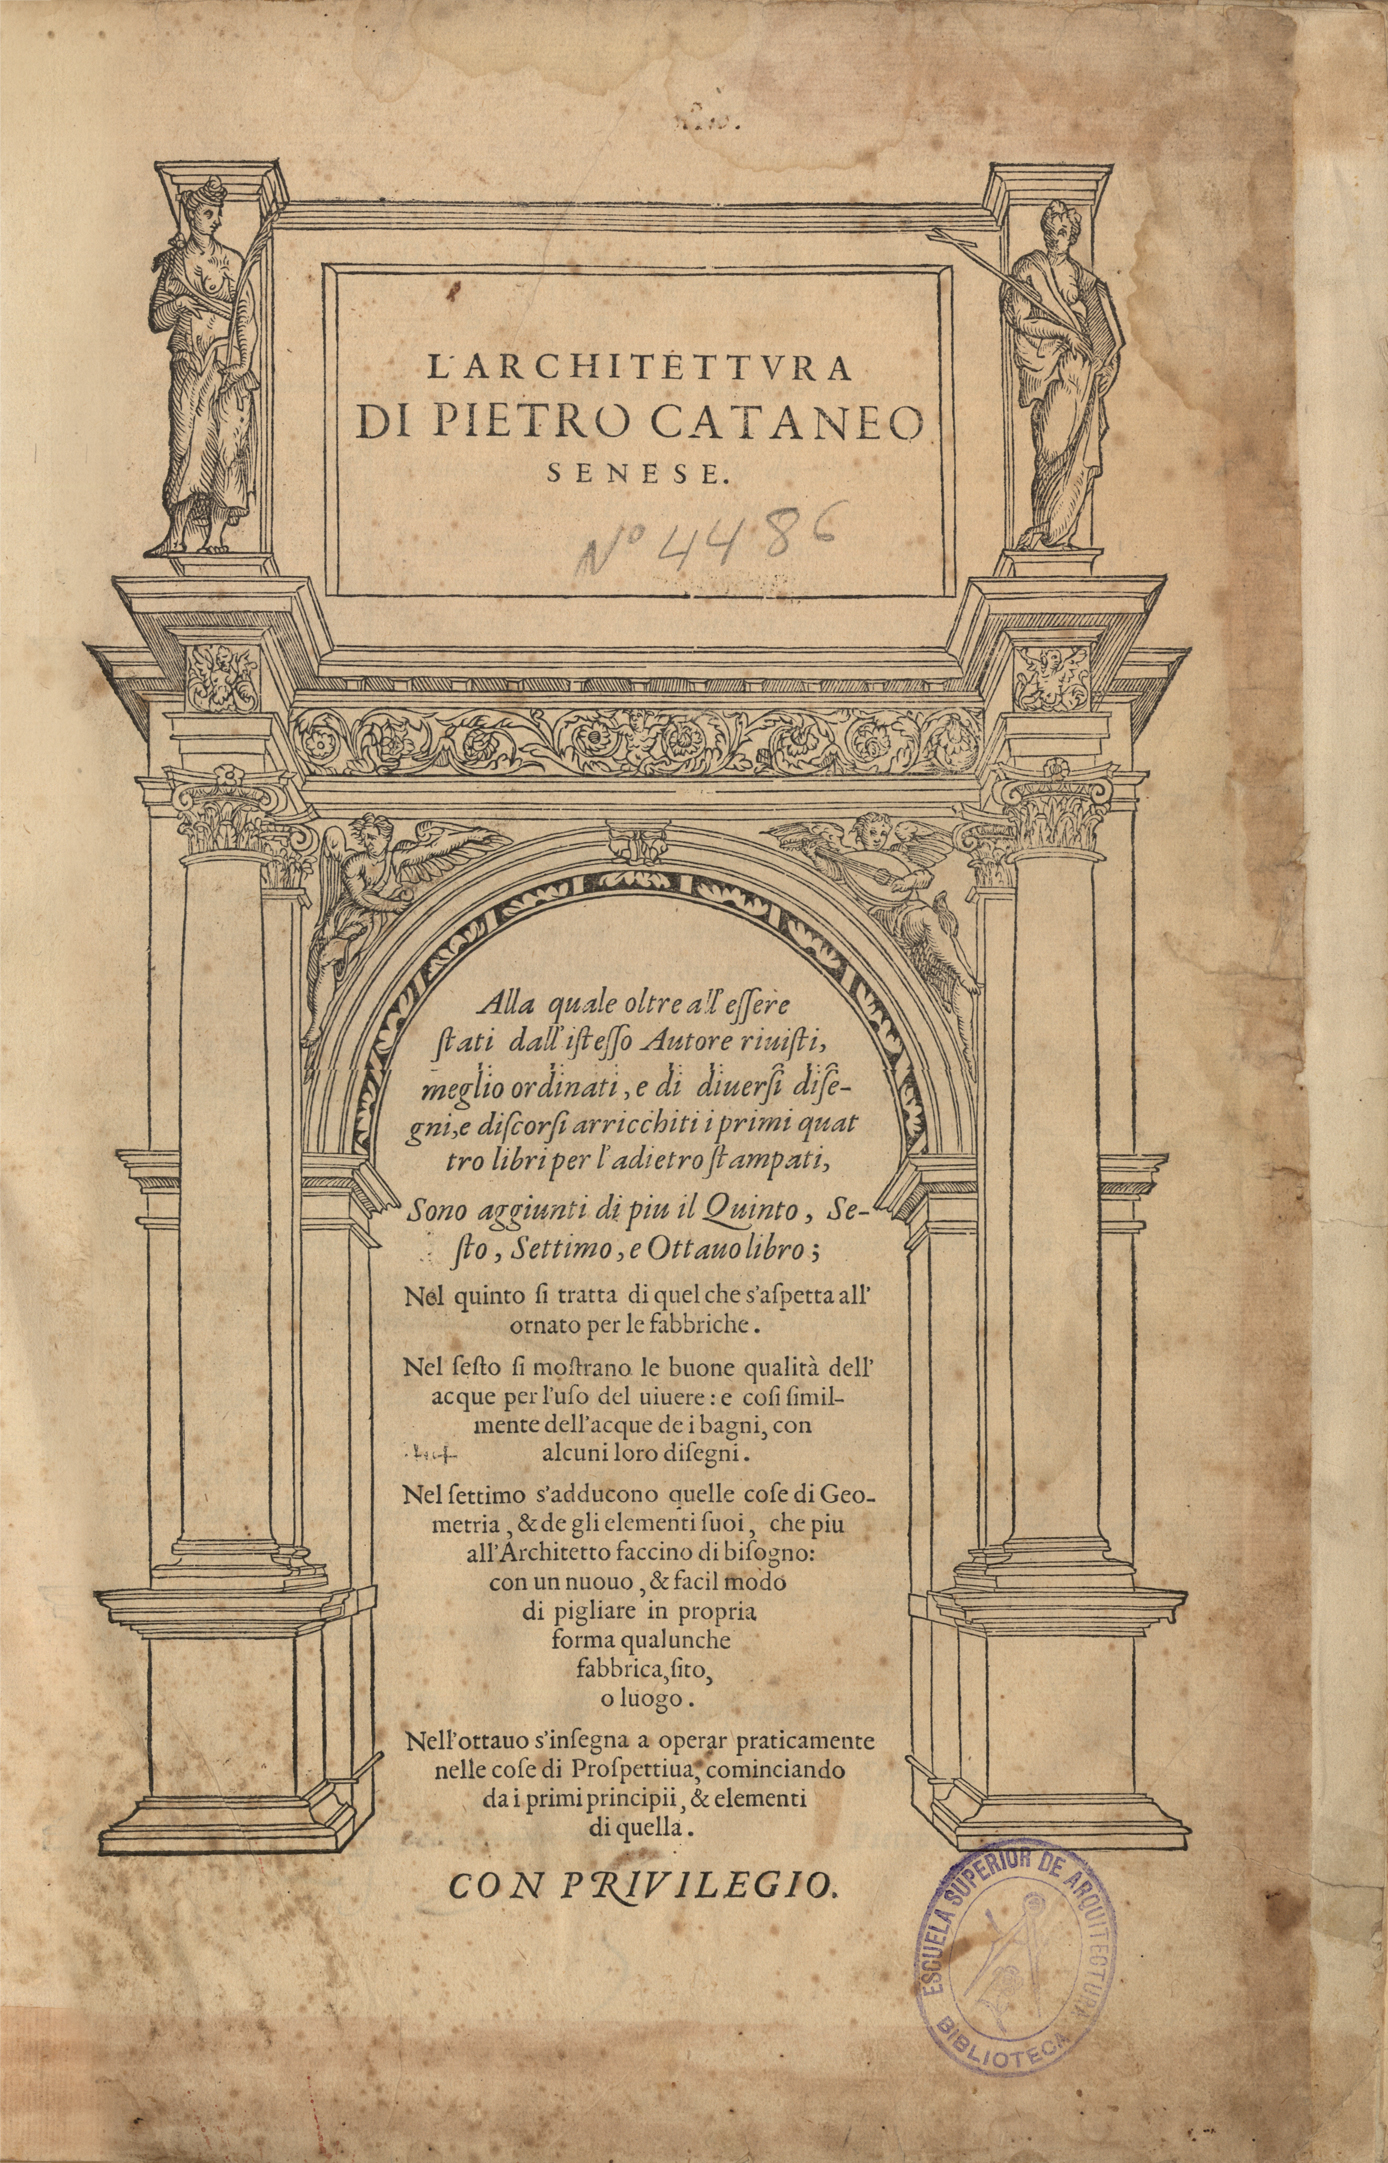 L'architettura di Pietro Cataneo senese, 1567